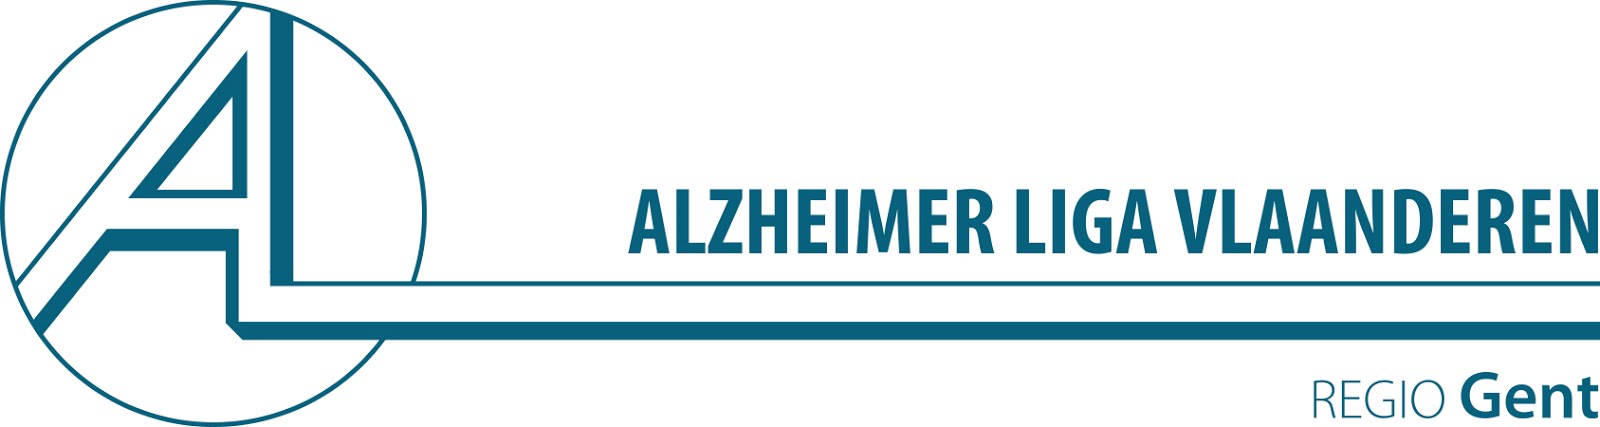 Alzheimerliga